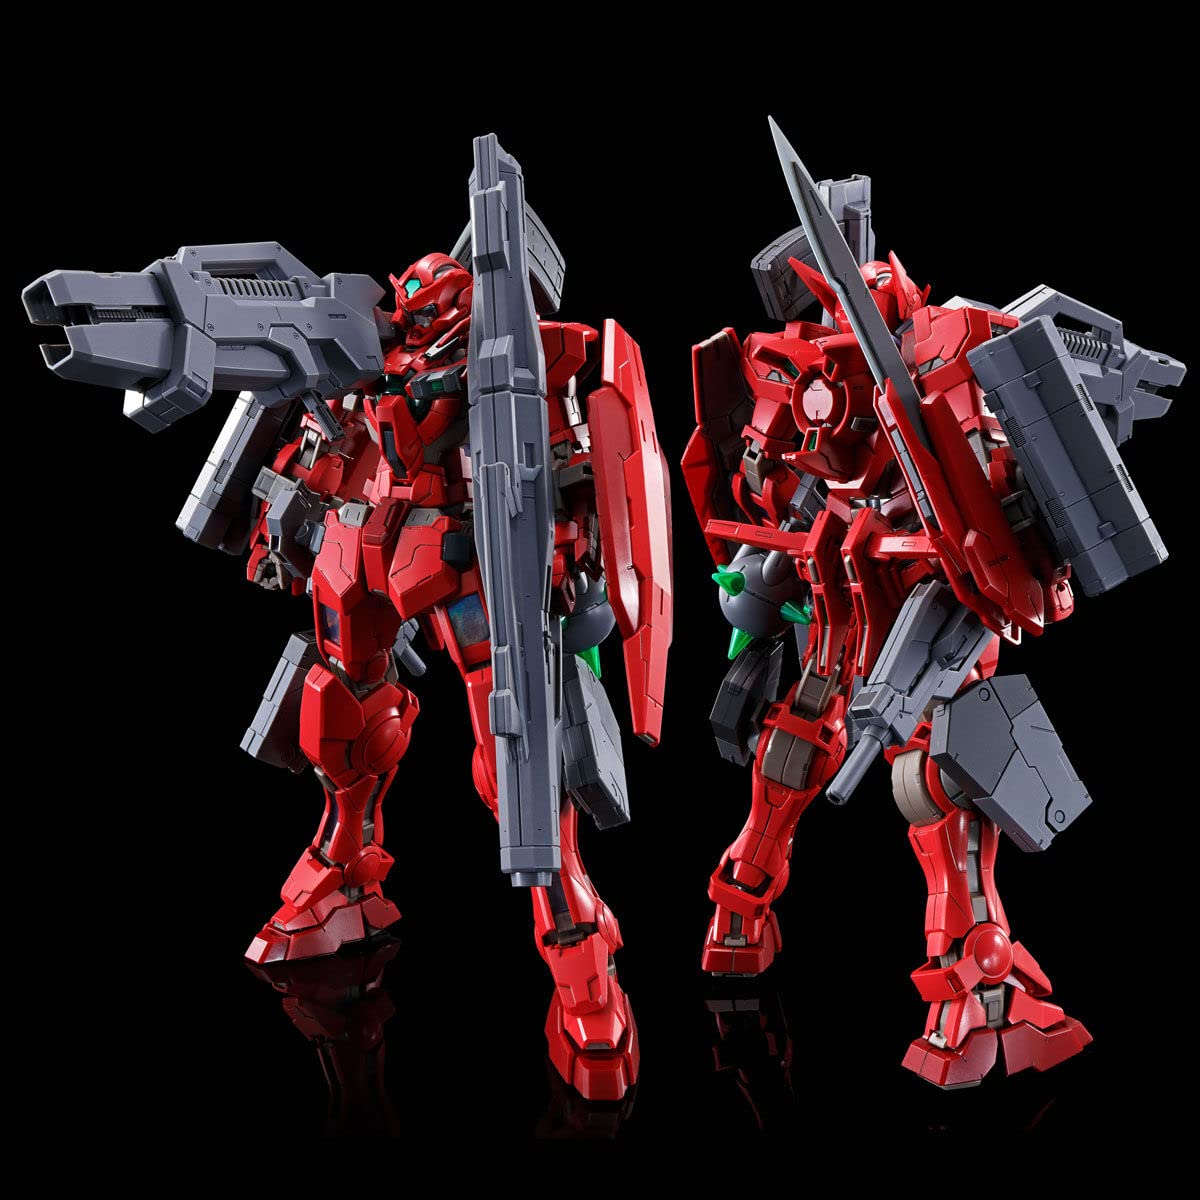 1/100 MG Gundam Astraea Type-F Full Weapon Set